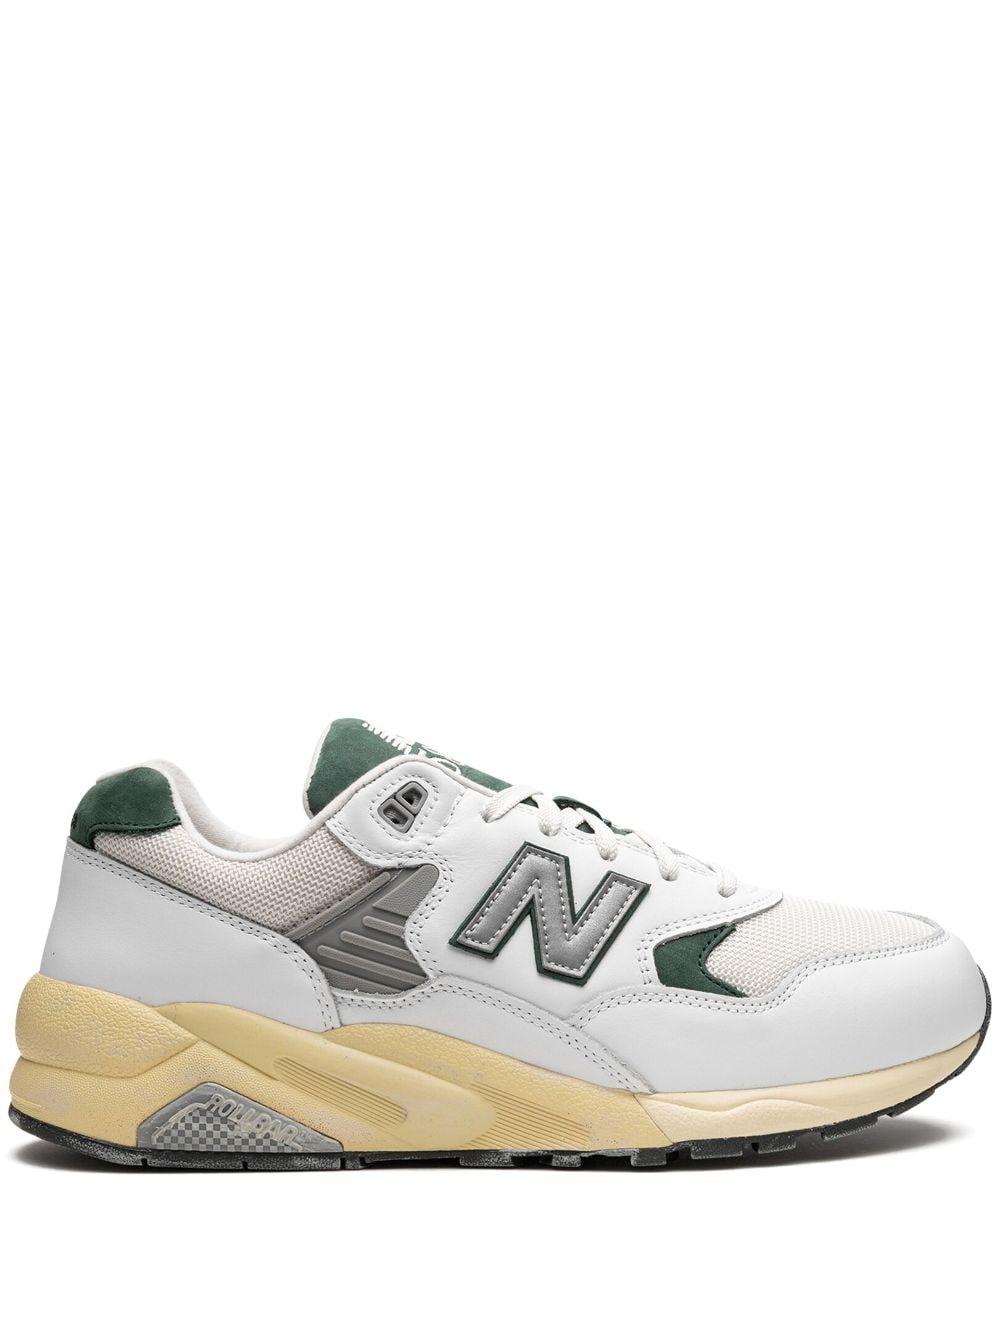 New Balance 580 "Nightwatch Green" sneakers - White von New Balance